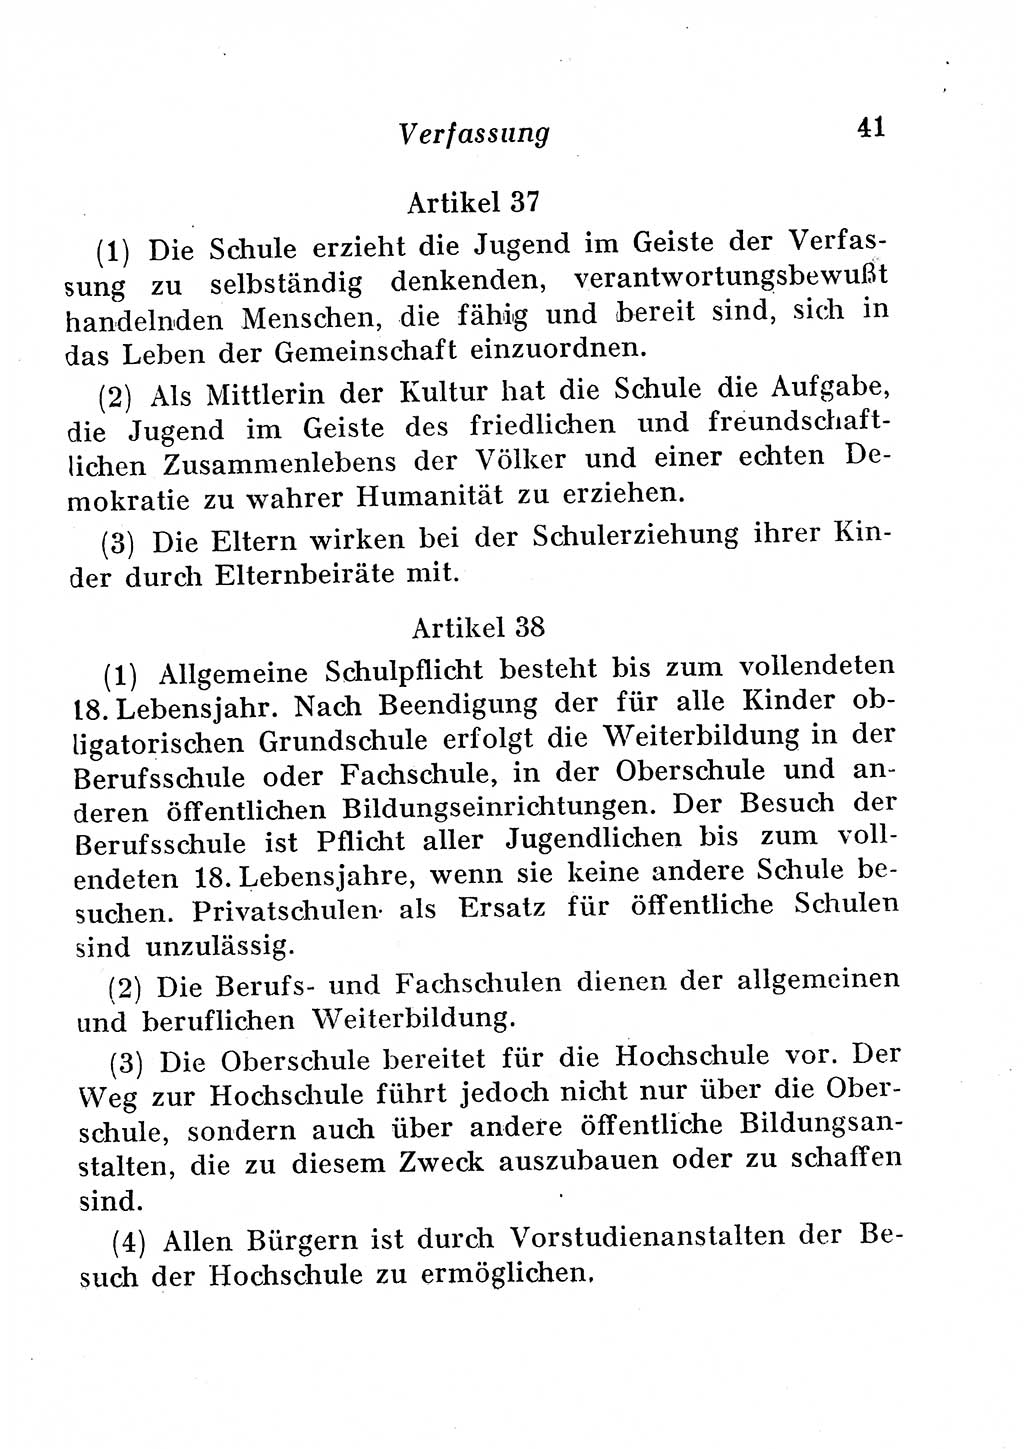 Staats- und verwaltungsrechtliche Gesetze der Deutschen Demokratischen Republik (DDR) 1958, Seite 41 (StVerwR Ges. DDR 1958, S. 41)